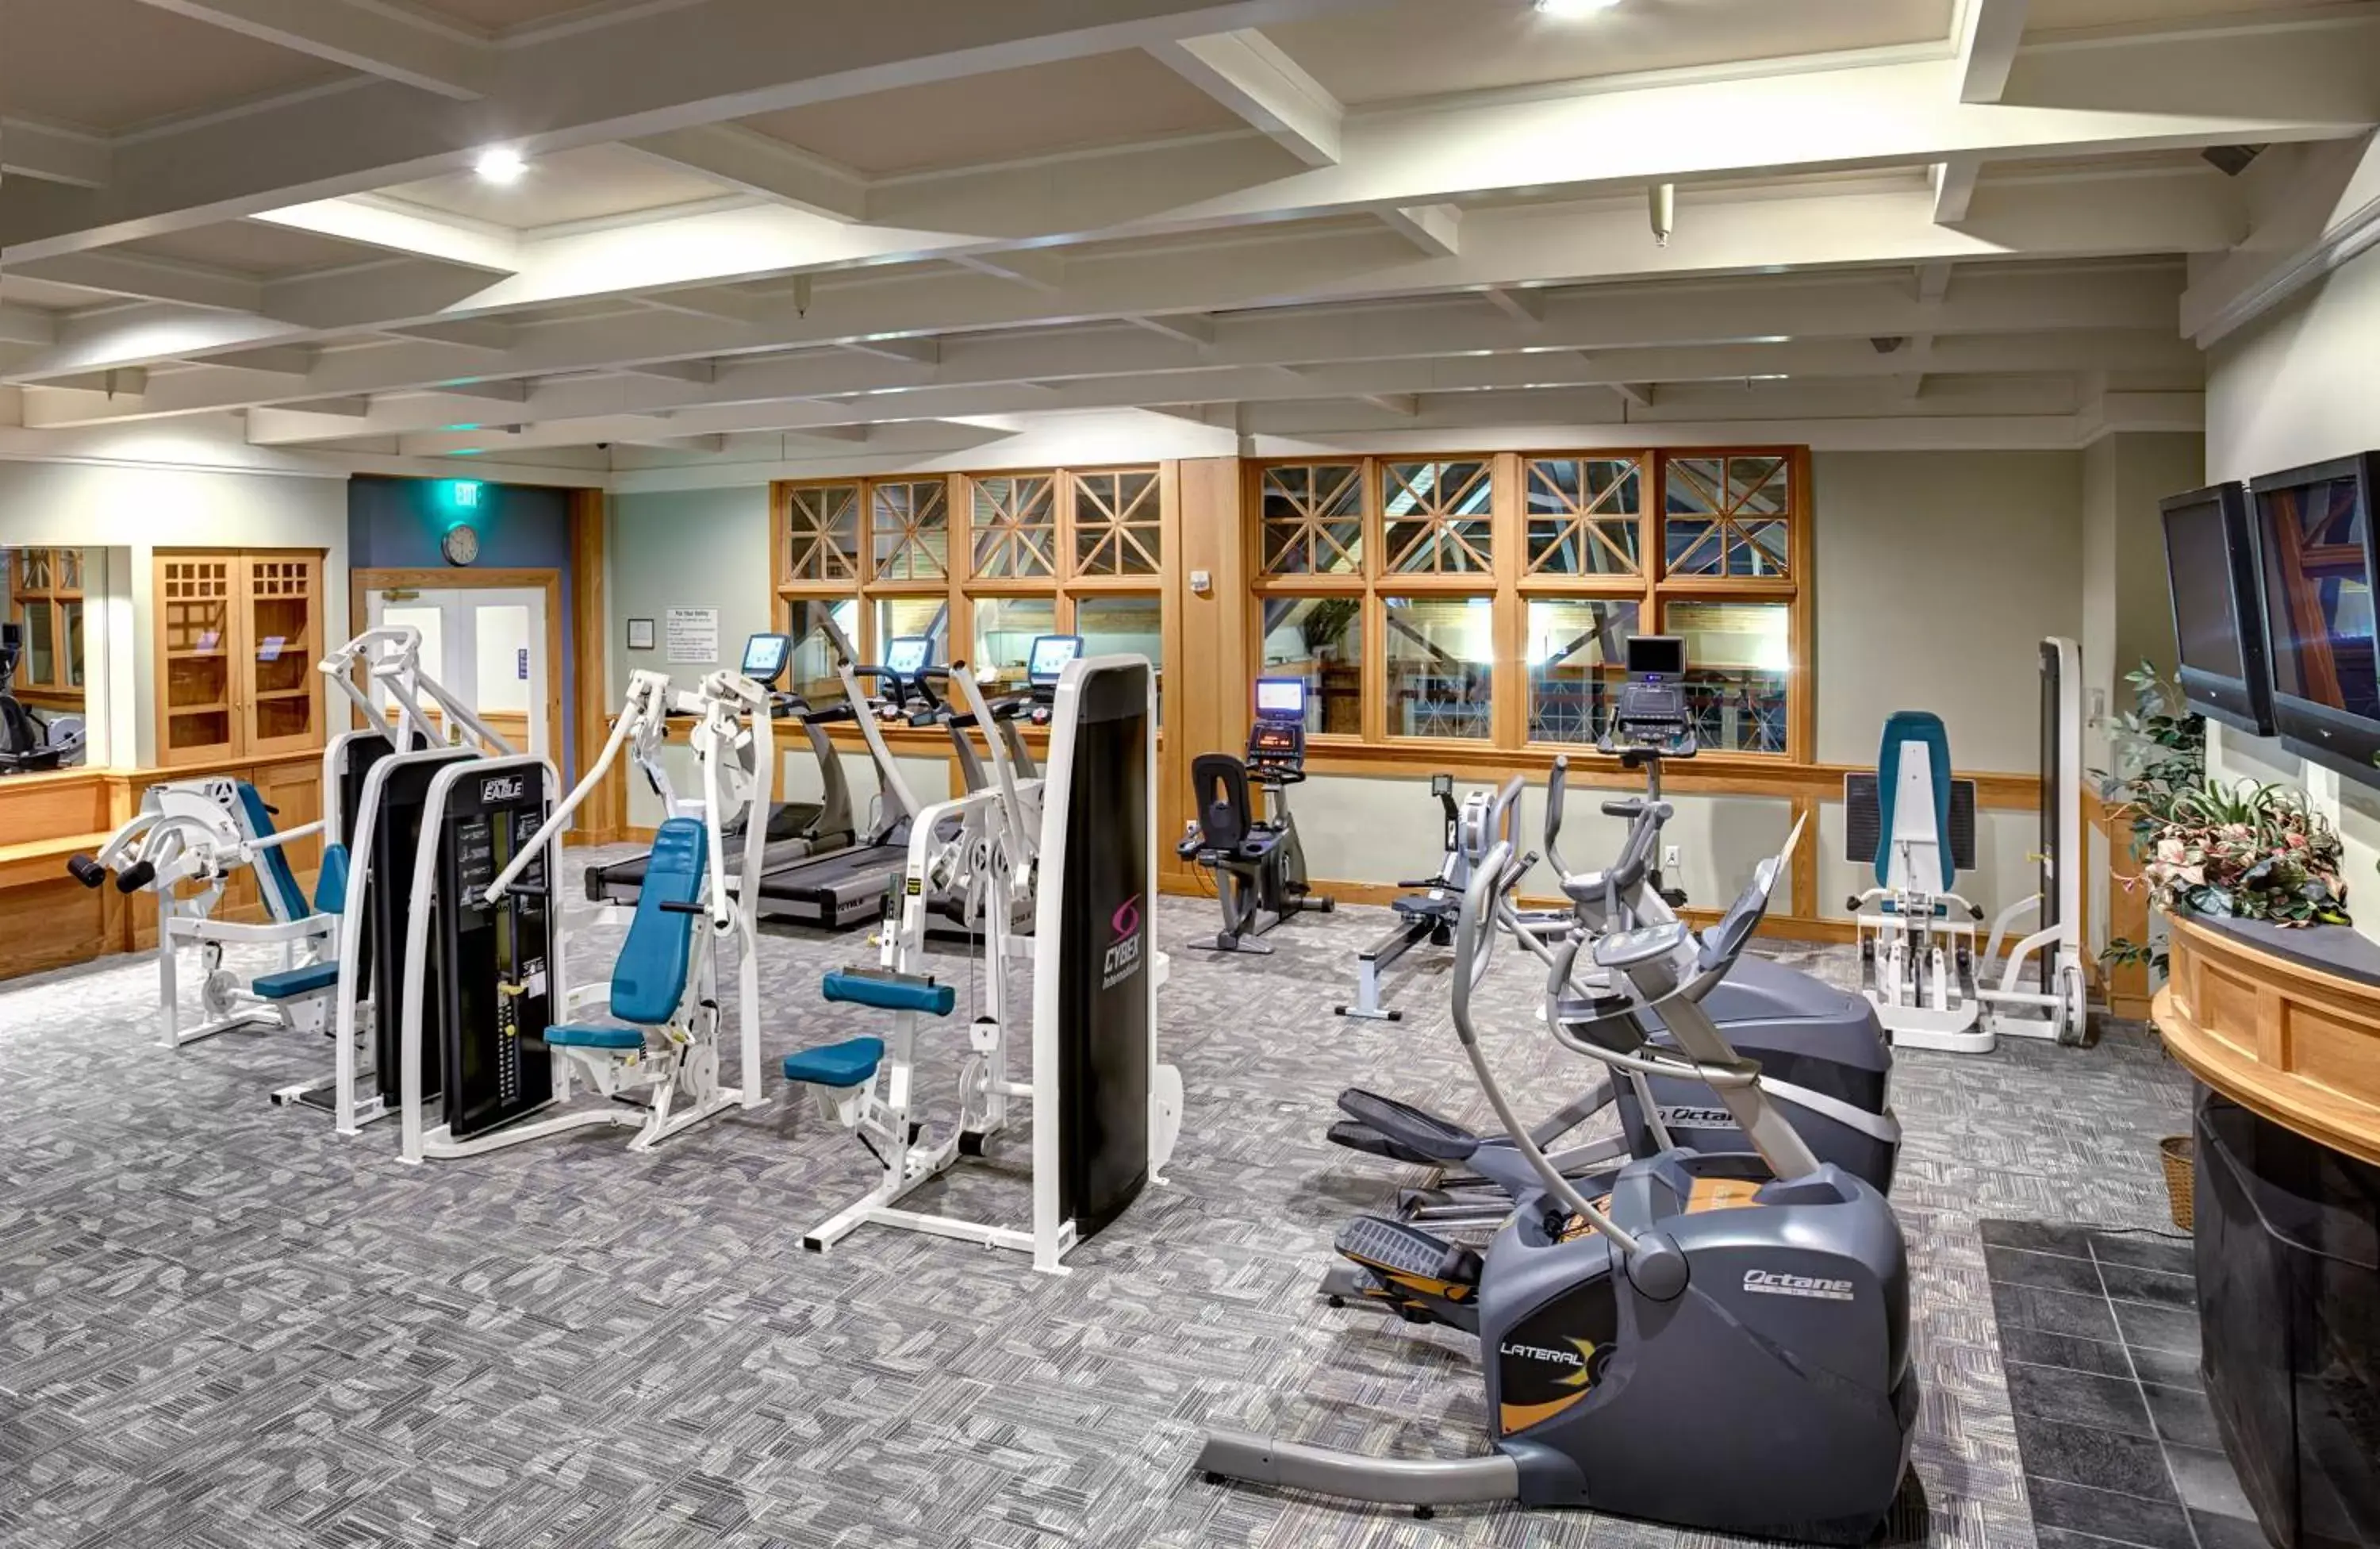 Fitness centre/facilities, Fitness Center/Facilities in Kingsmill Resort